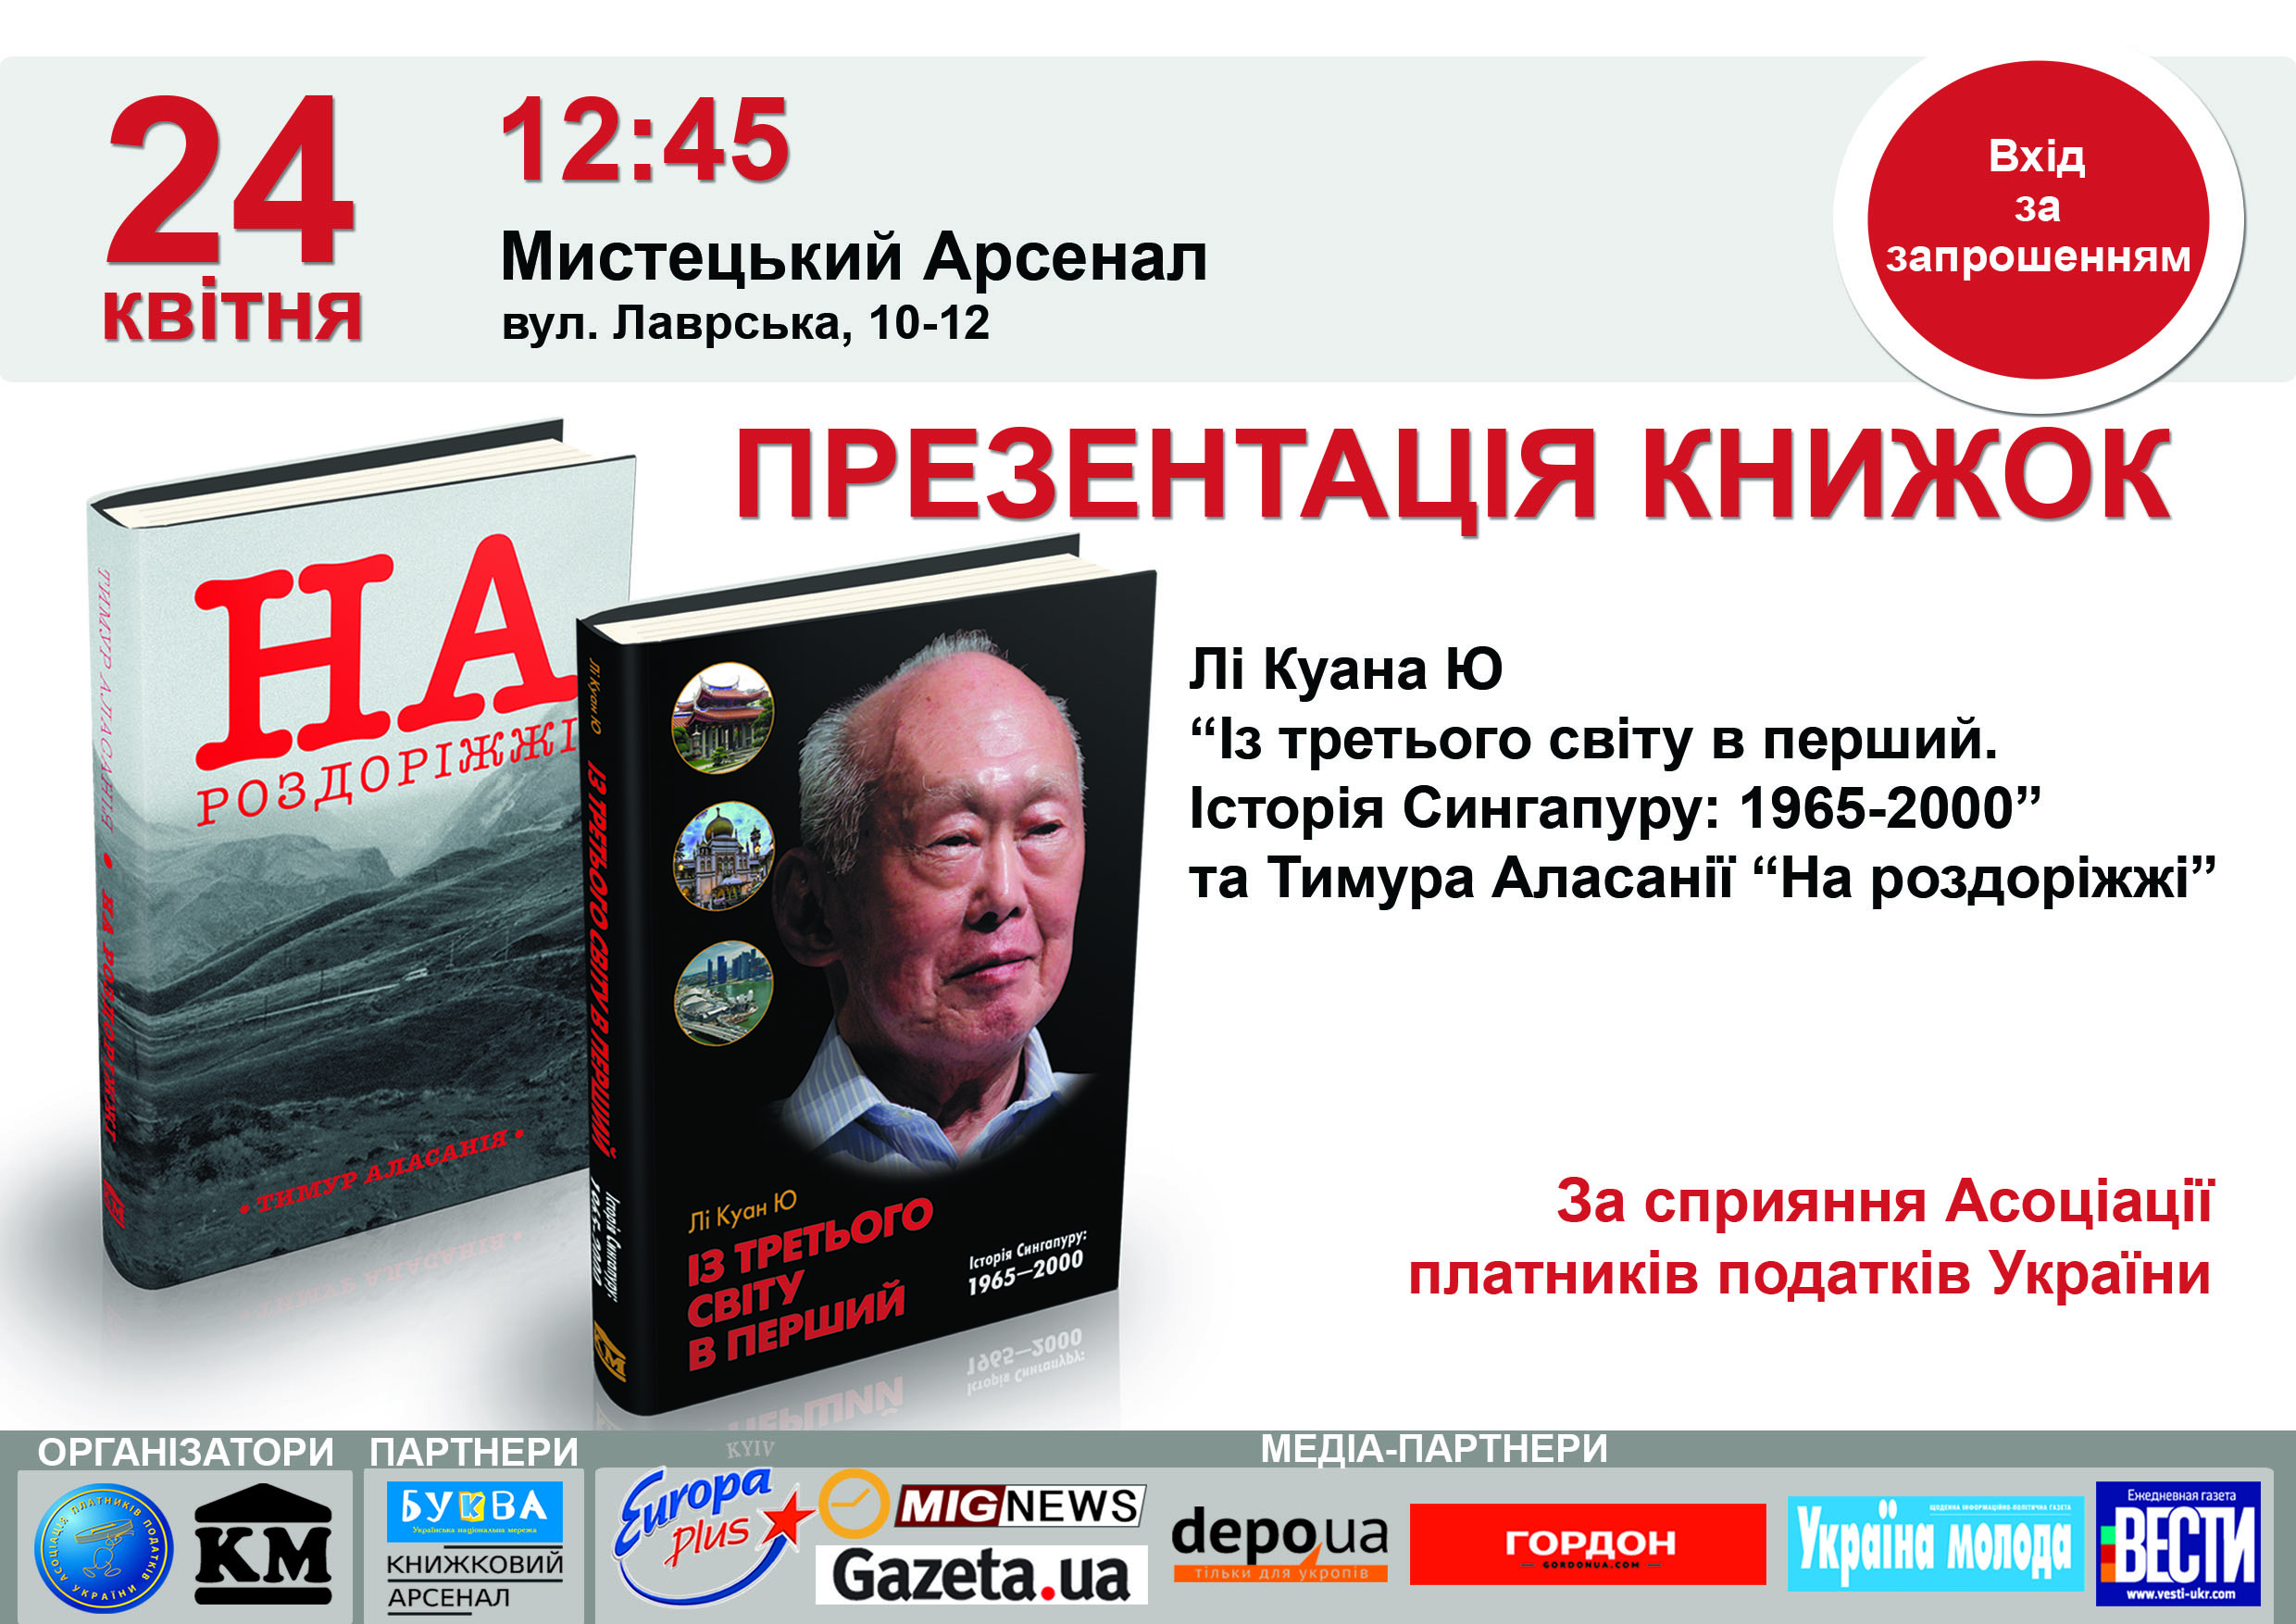 Вперше в Україні презентують книги про успішні реформи - фото 1